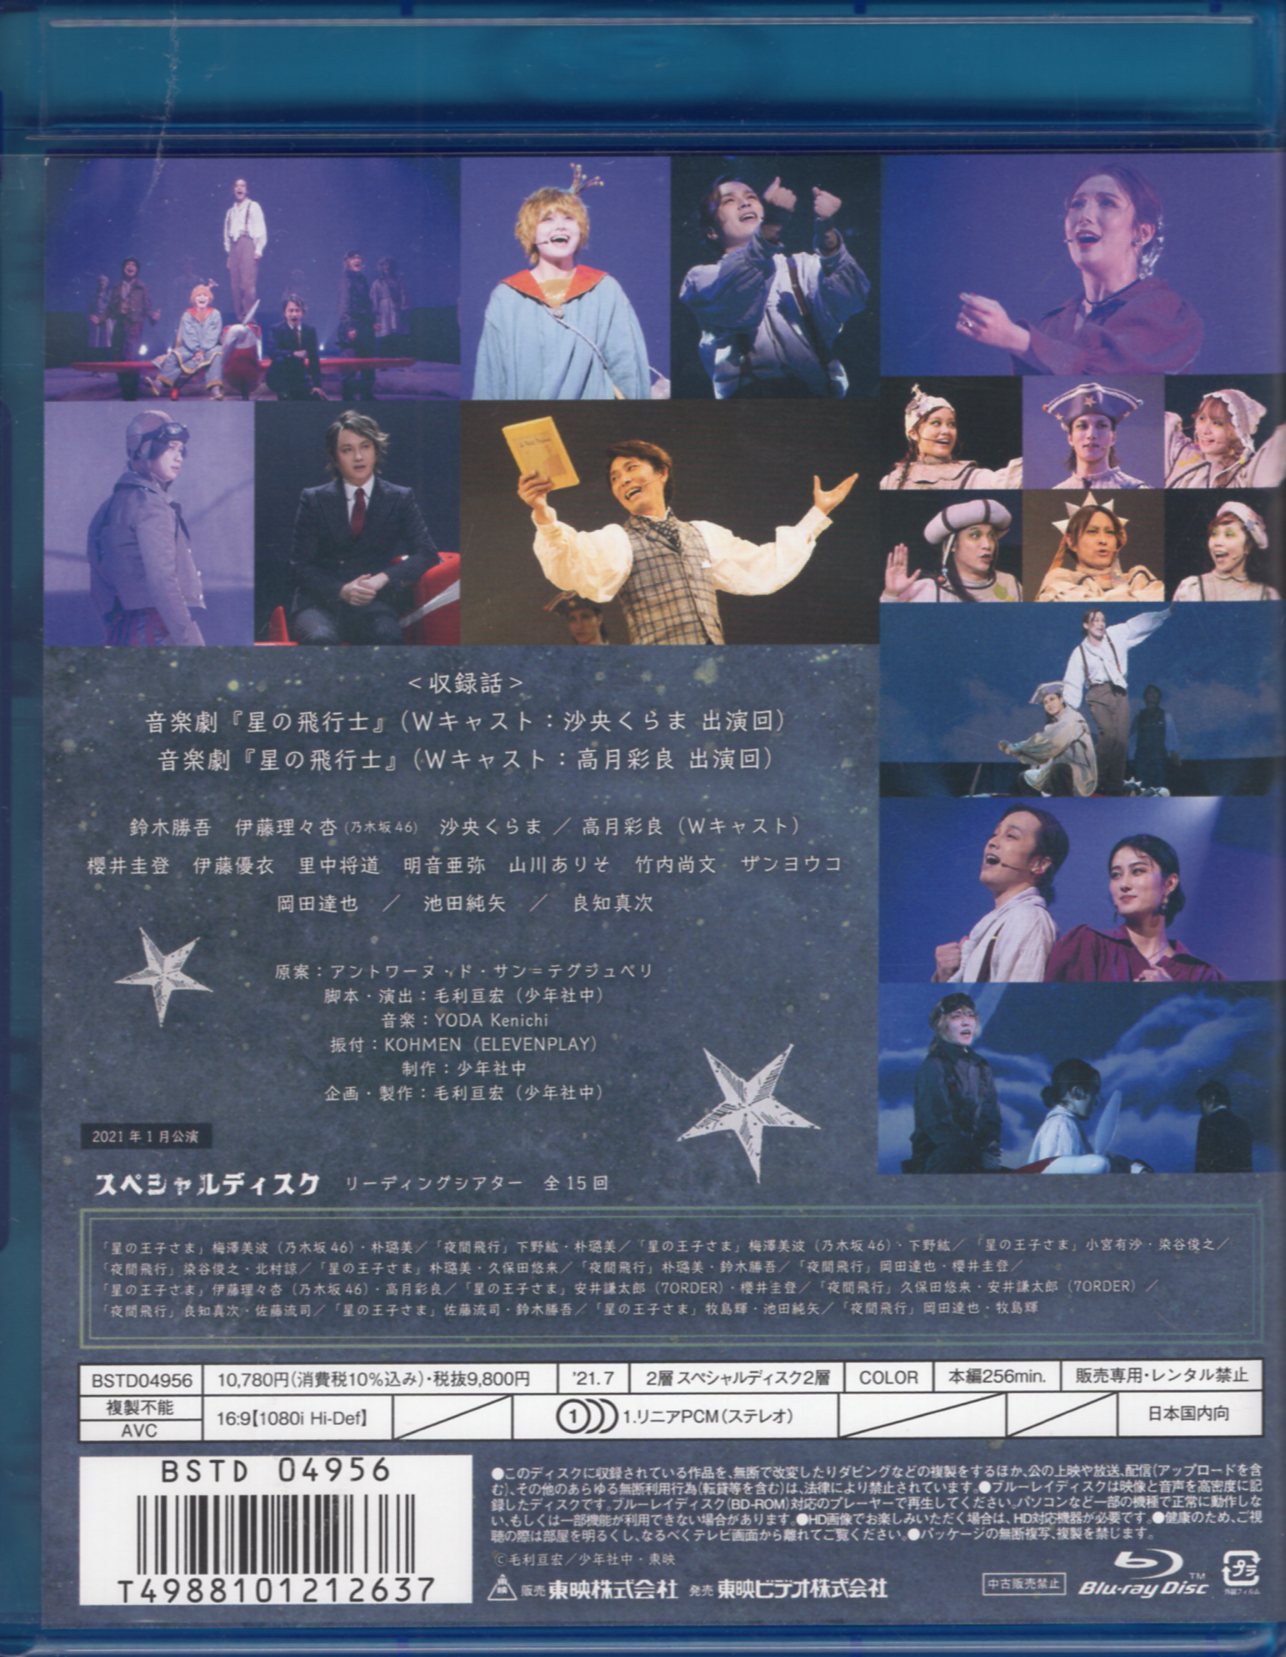 東映 舞台Blu-ray 演劇の毛利さん 限定予約版)音楽劇 星の飛行士/演劇 